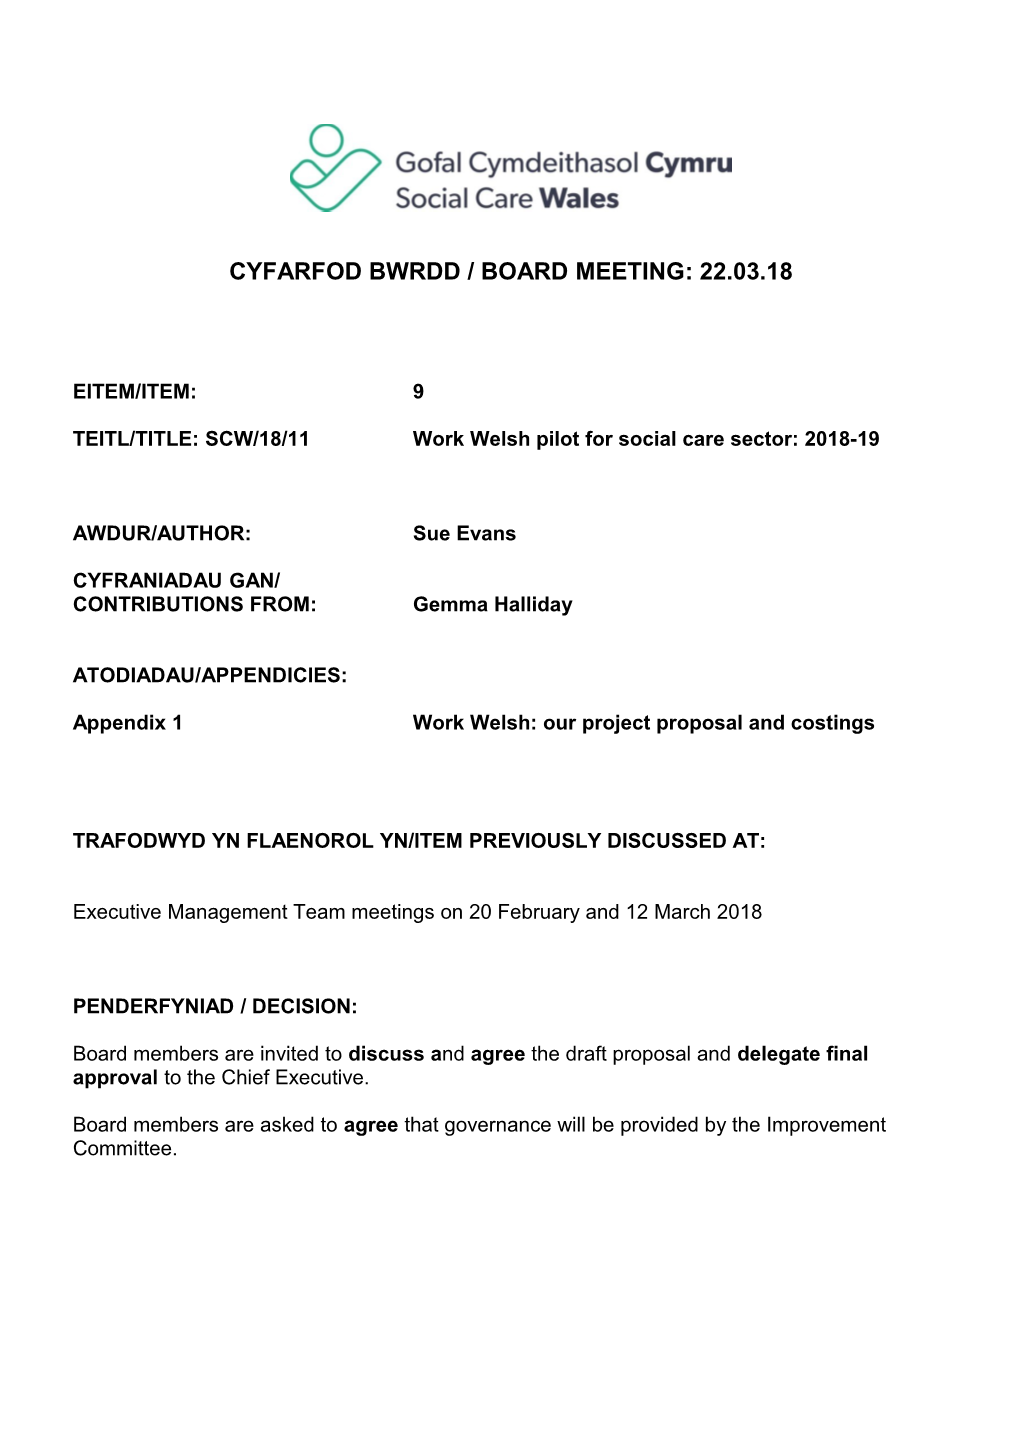 Cyfarfod Bwrdd / Board Meeting: 22.03.18